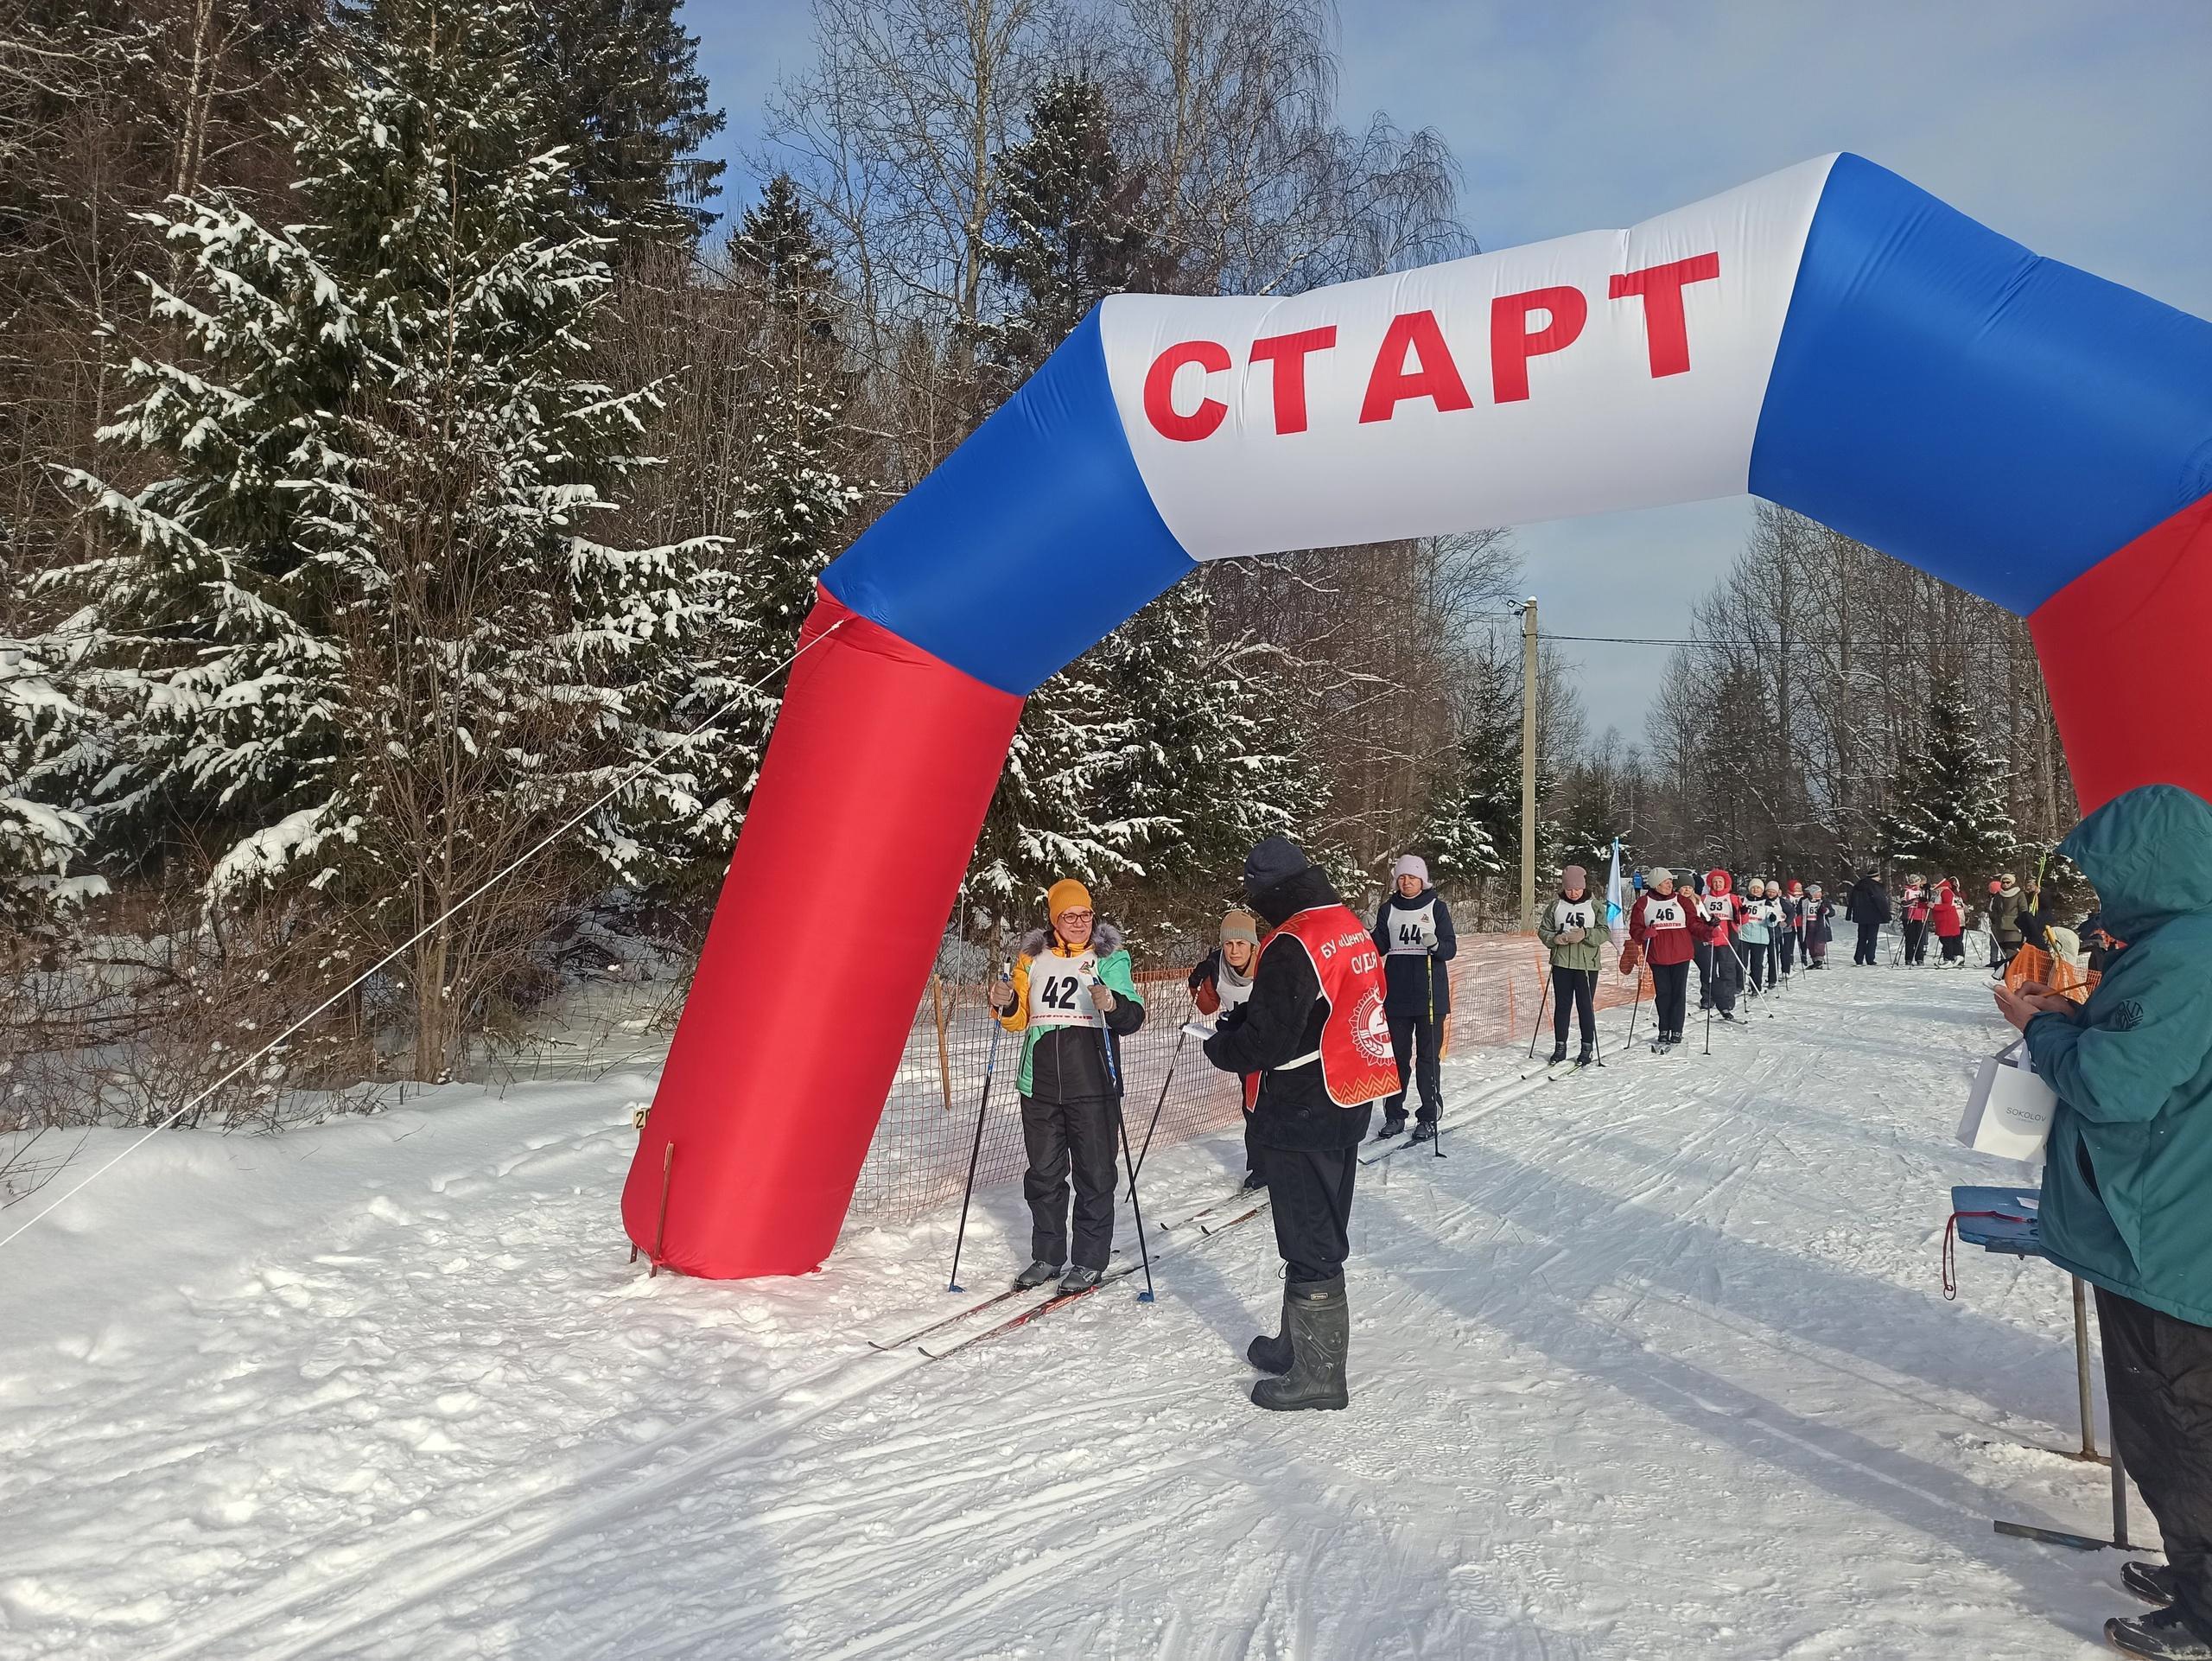 Соревнования по лыжным гонкам прошли сразу в рамках двух спартакиад Грязовецкого округа.